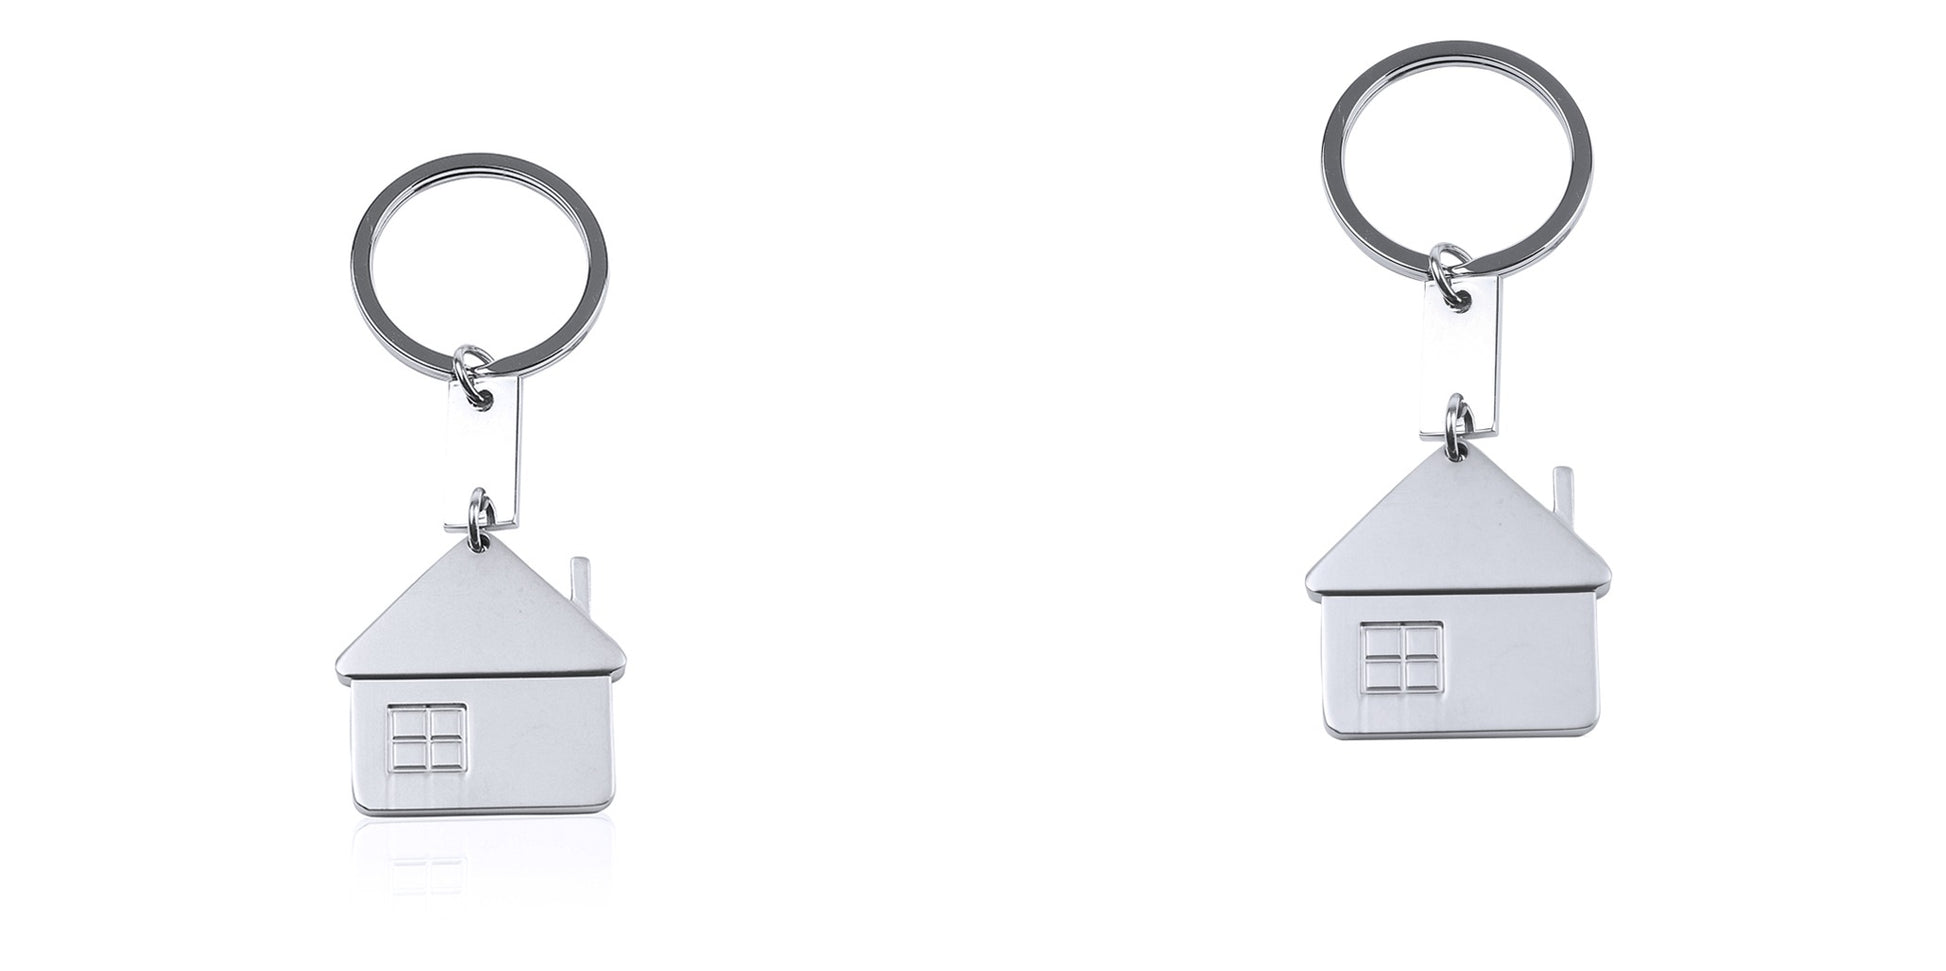 Porte-clés métallique en forme de maison avec finition mate. Personnalisable - Marquage laser recommandé.